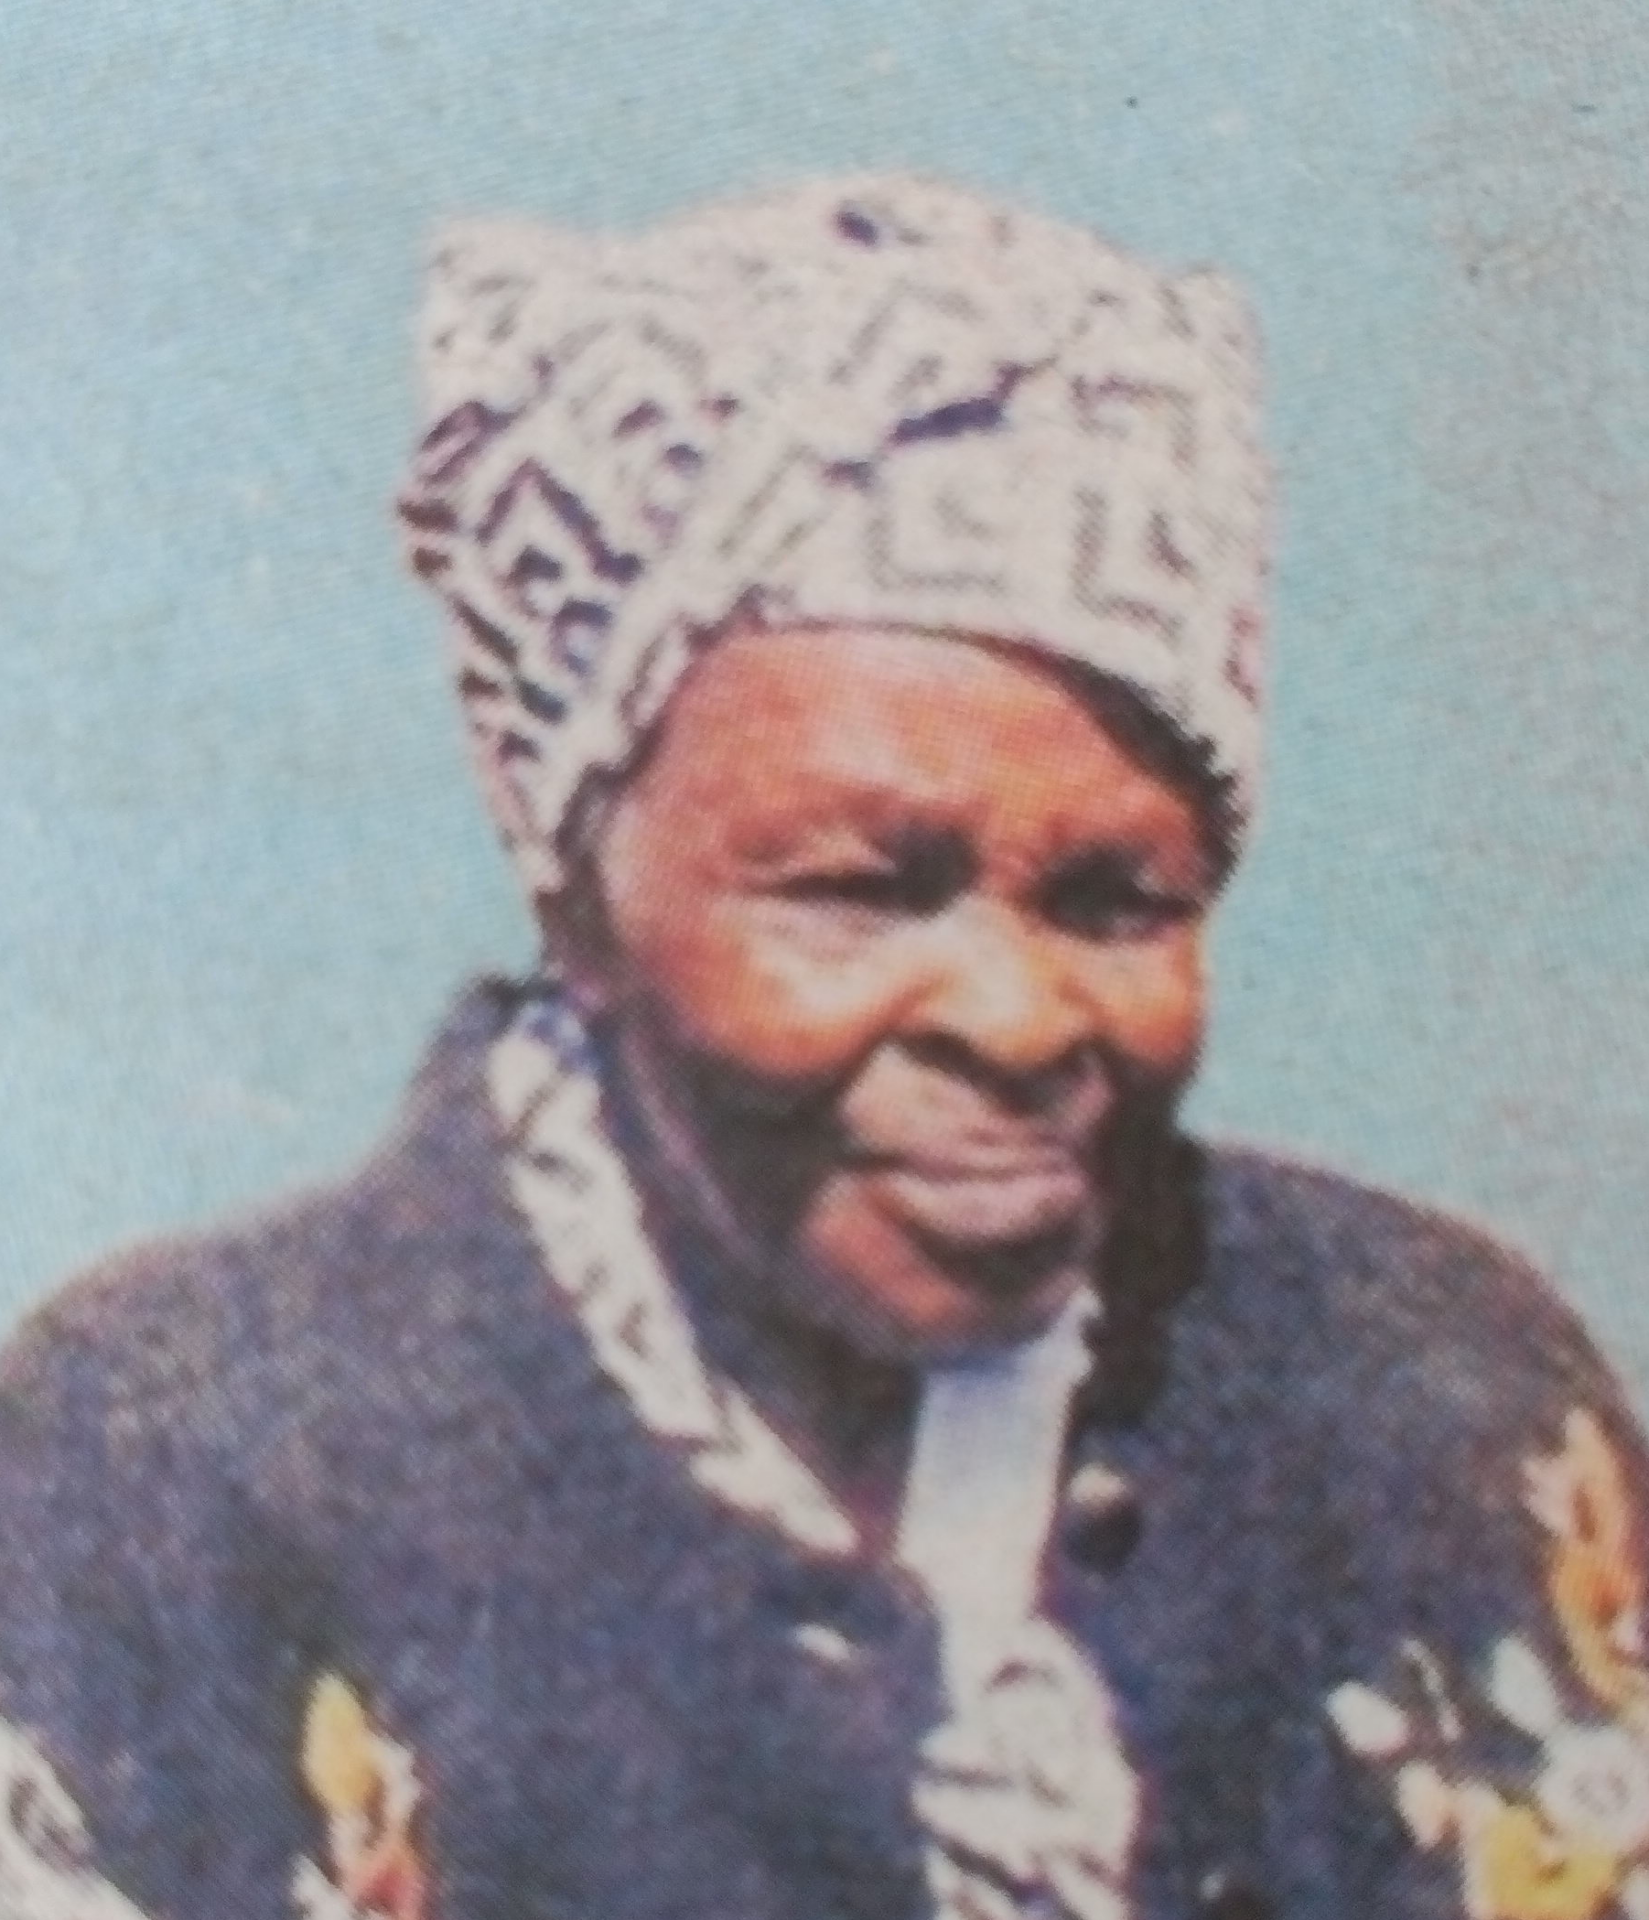 Obituary Image of Elizabeth Wanjiru Irungu